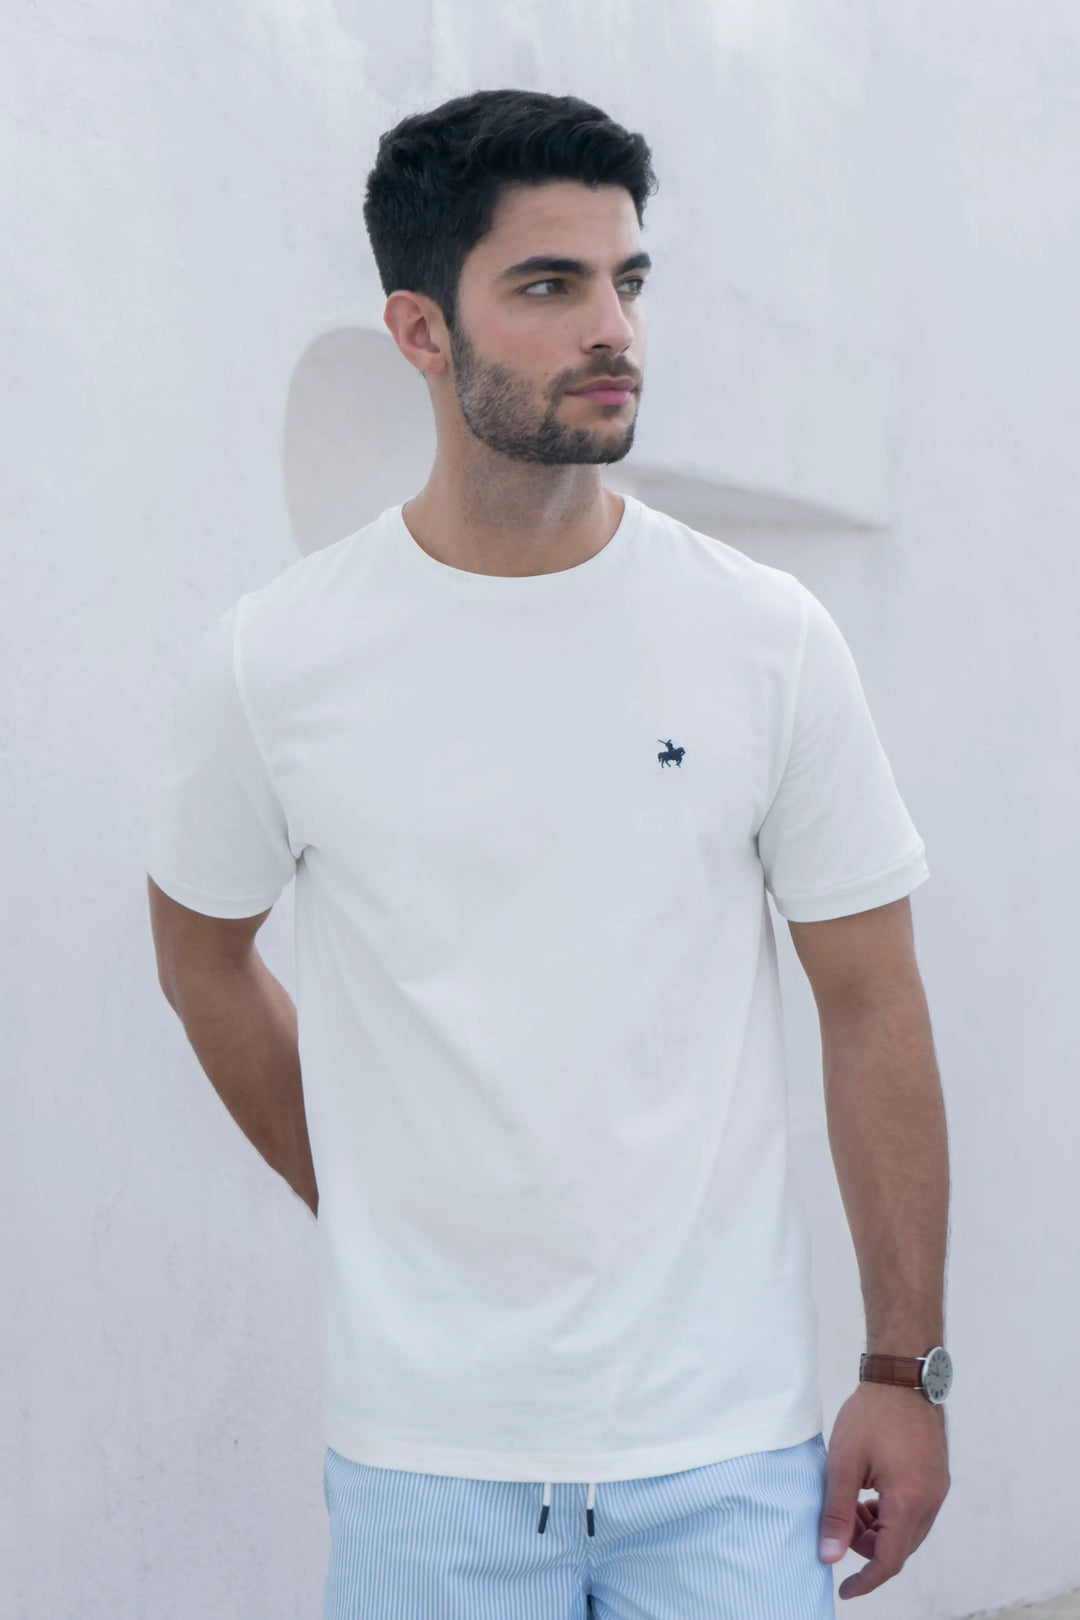 Camiseta blanca para hombre, tejido pique. Elegancia y funcionalidad.